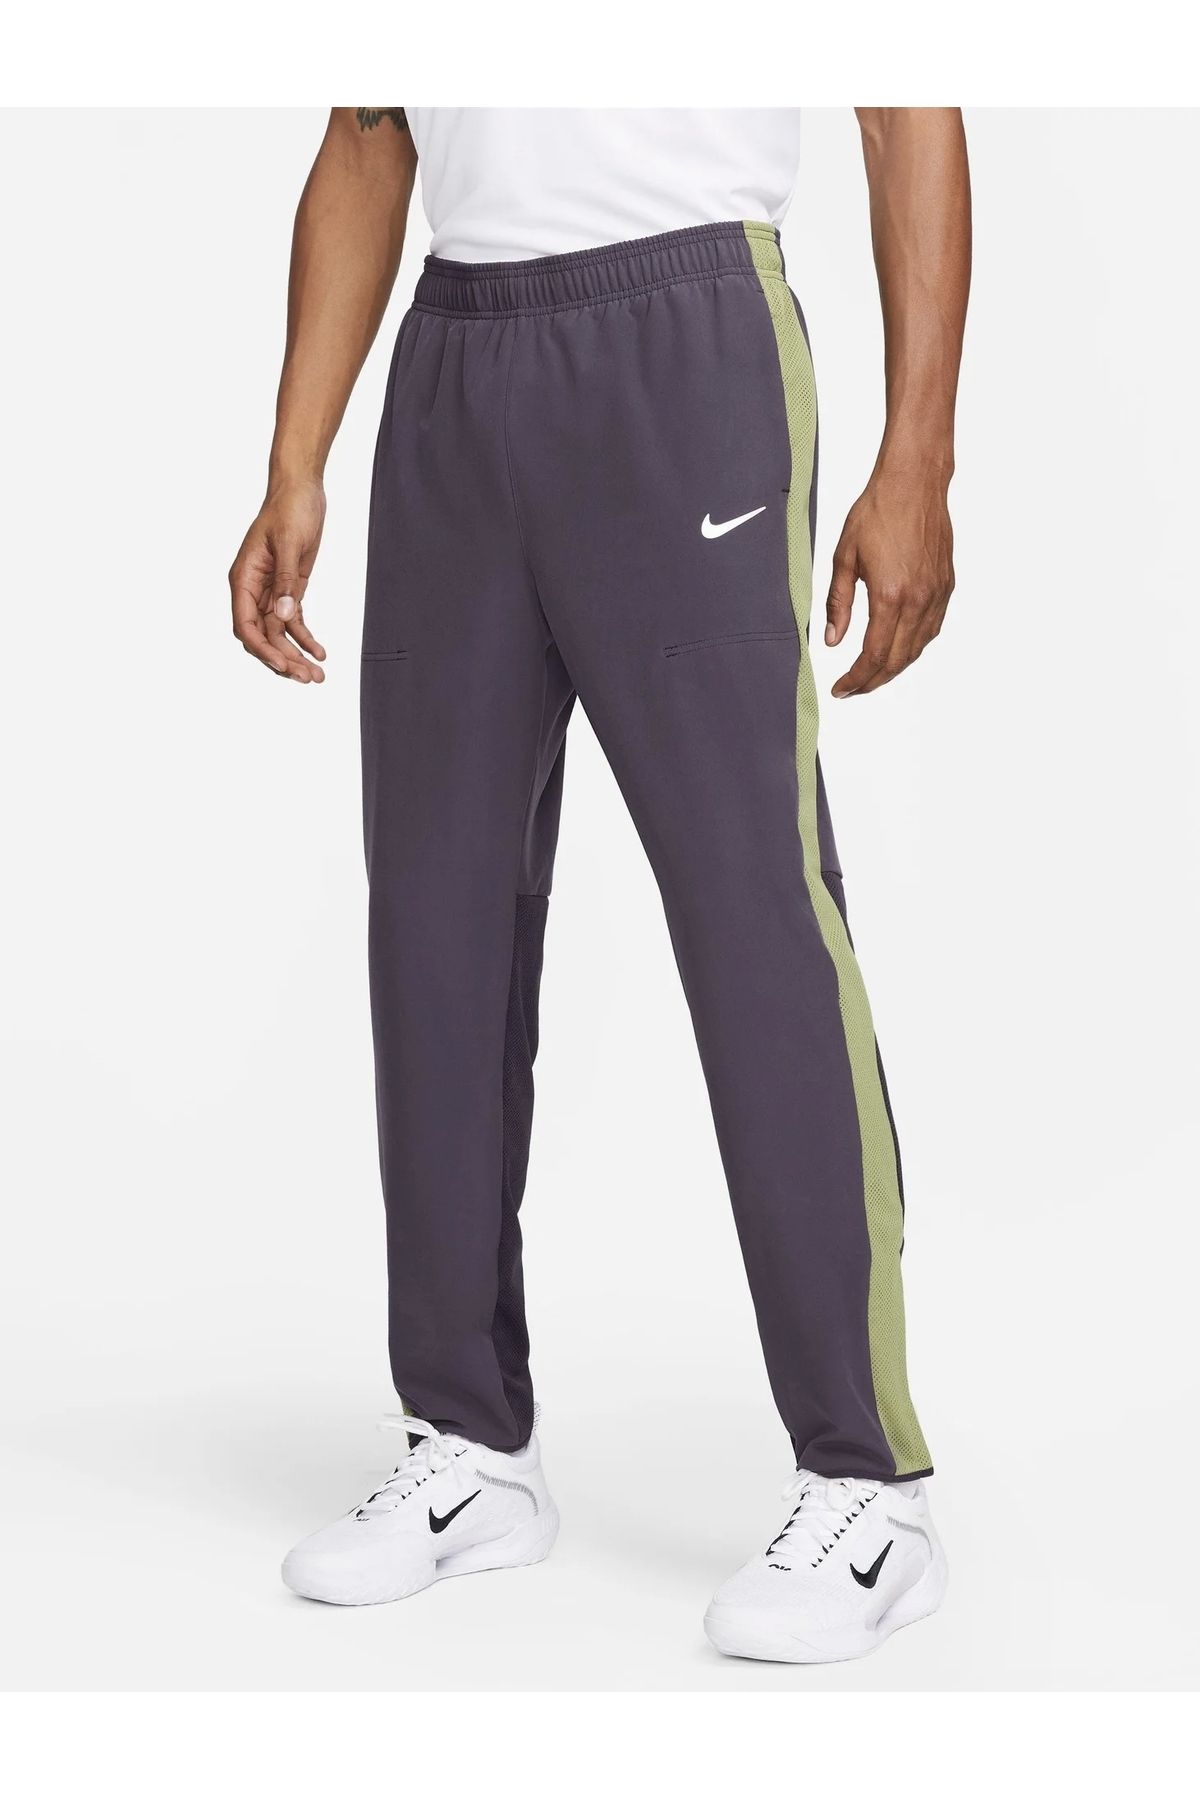 Nike NikeCourt Advantage Men's Tennis Pants - Trendyol